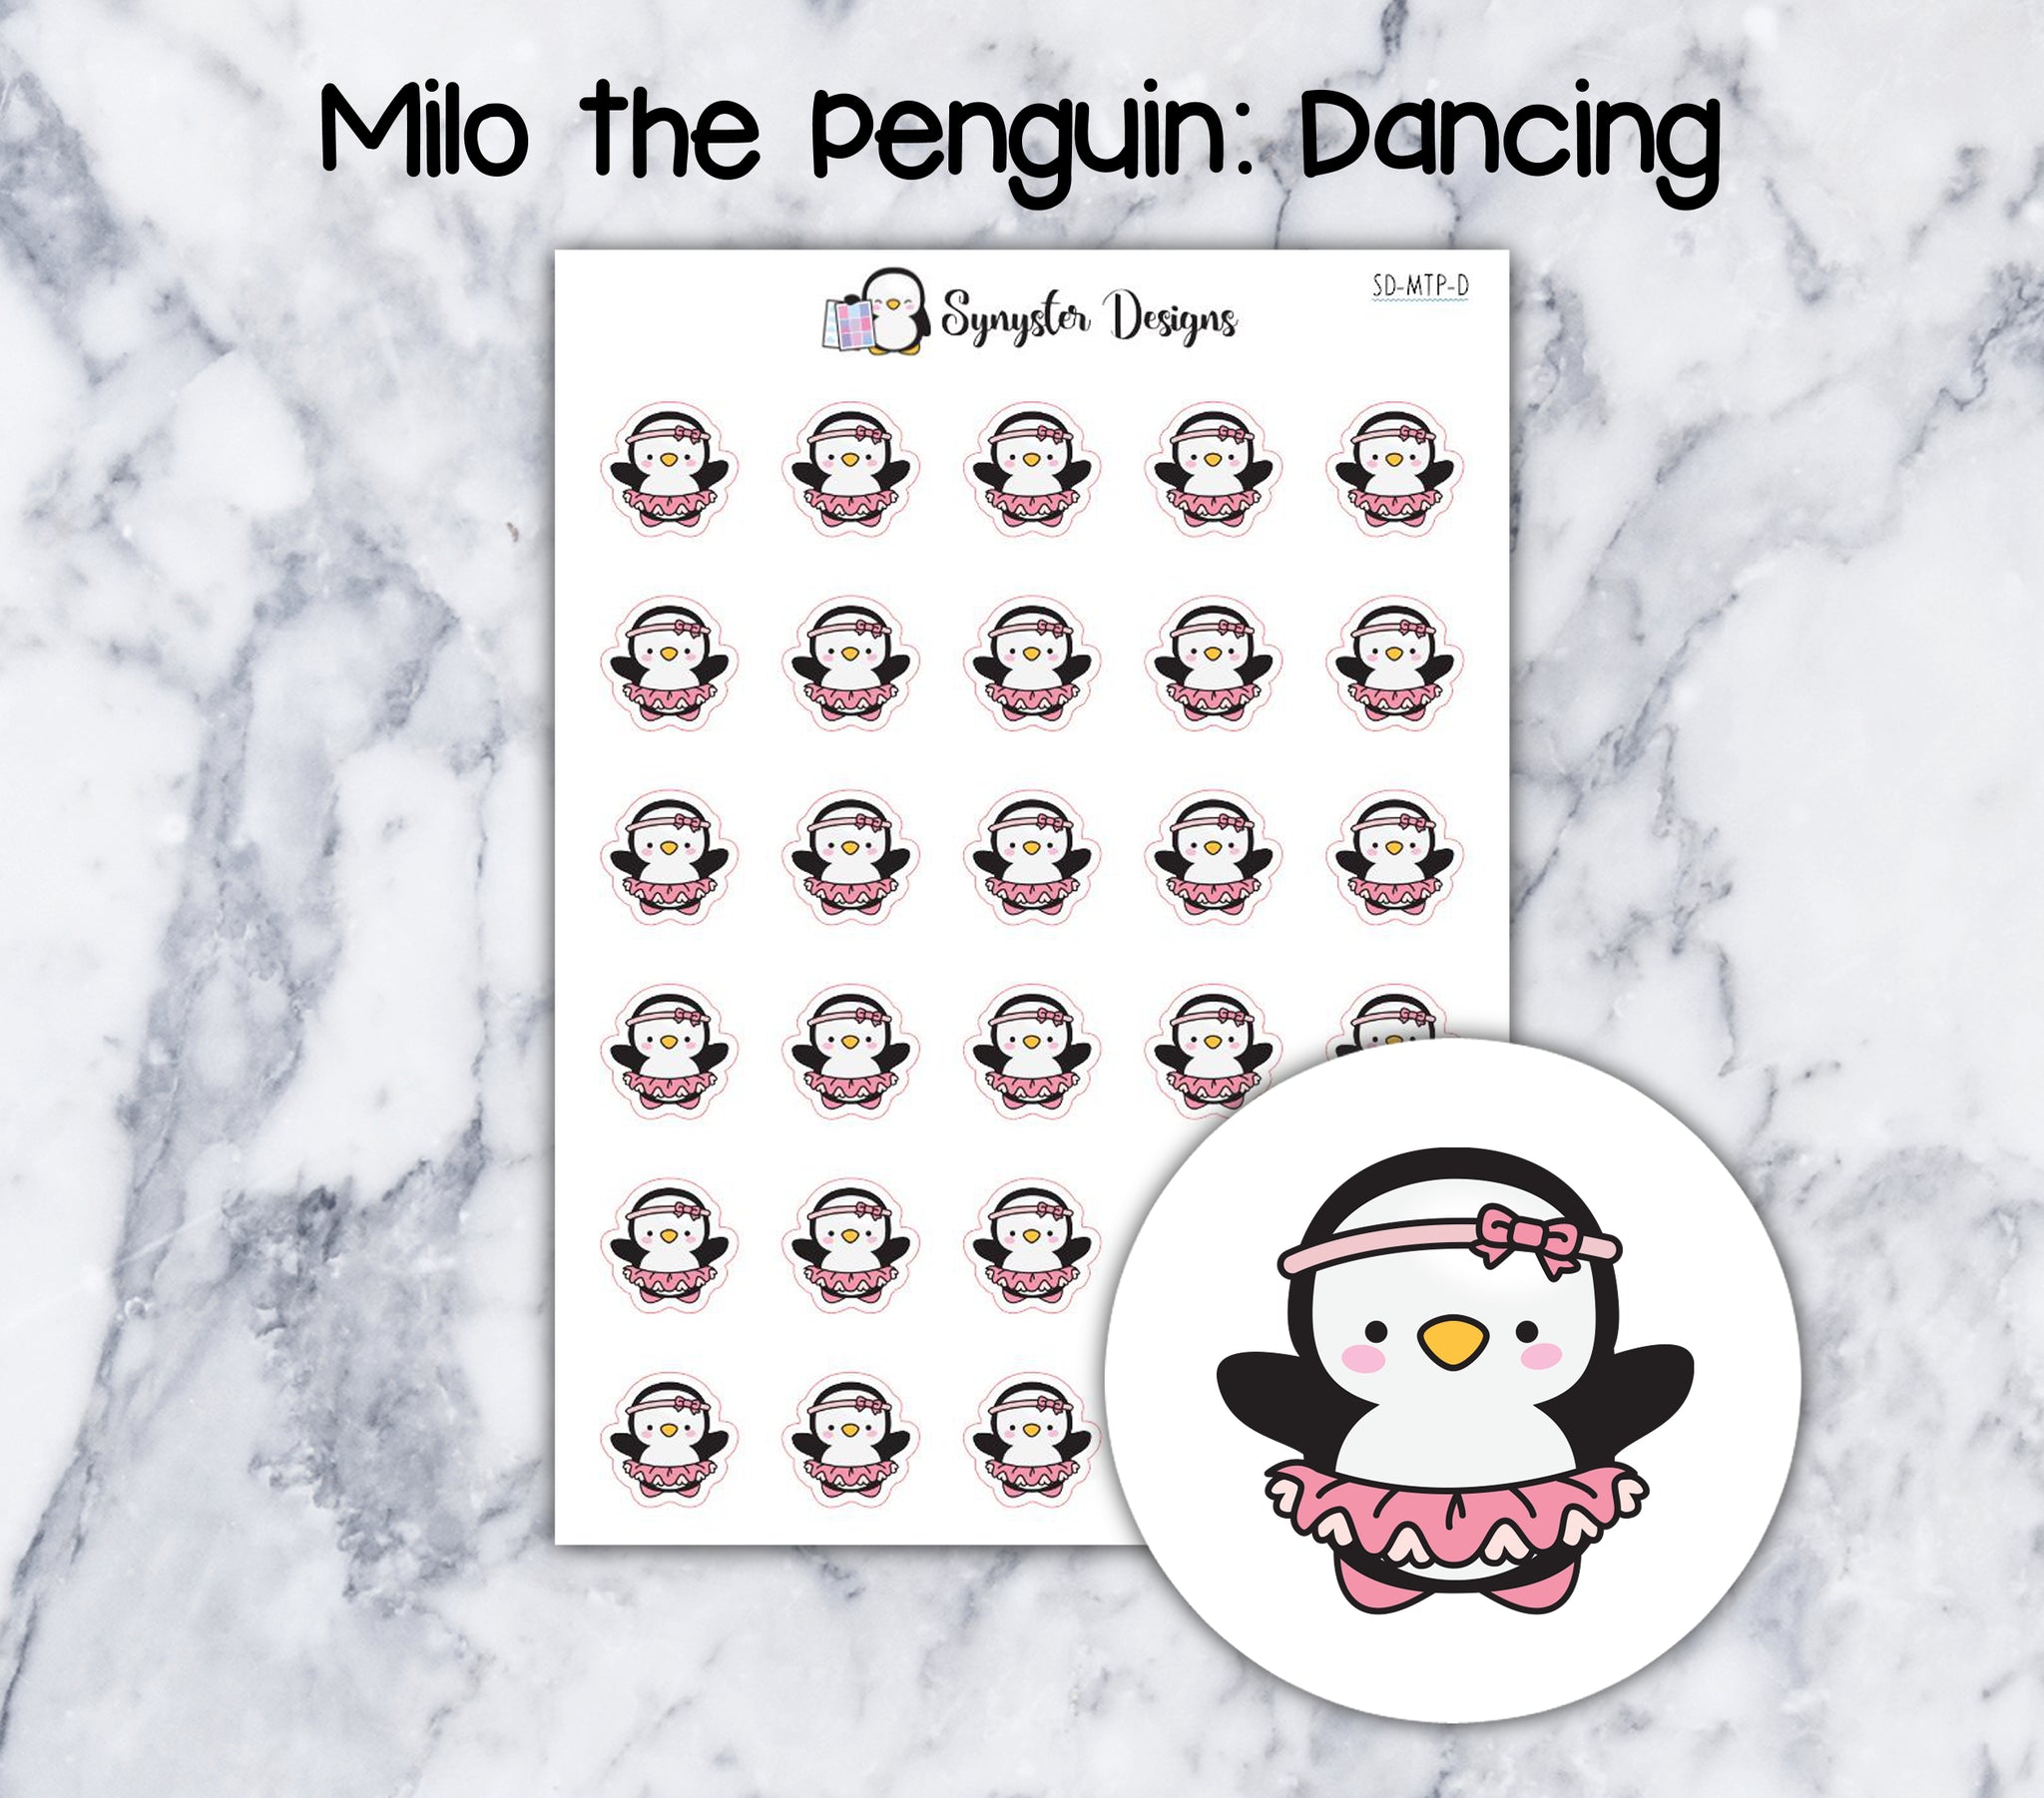 Dancing Milo the Penguin